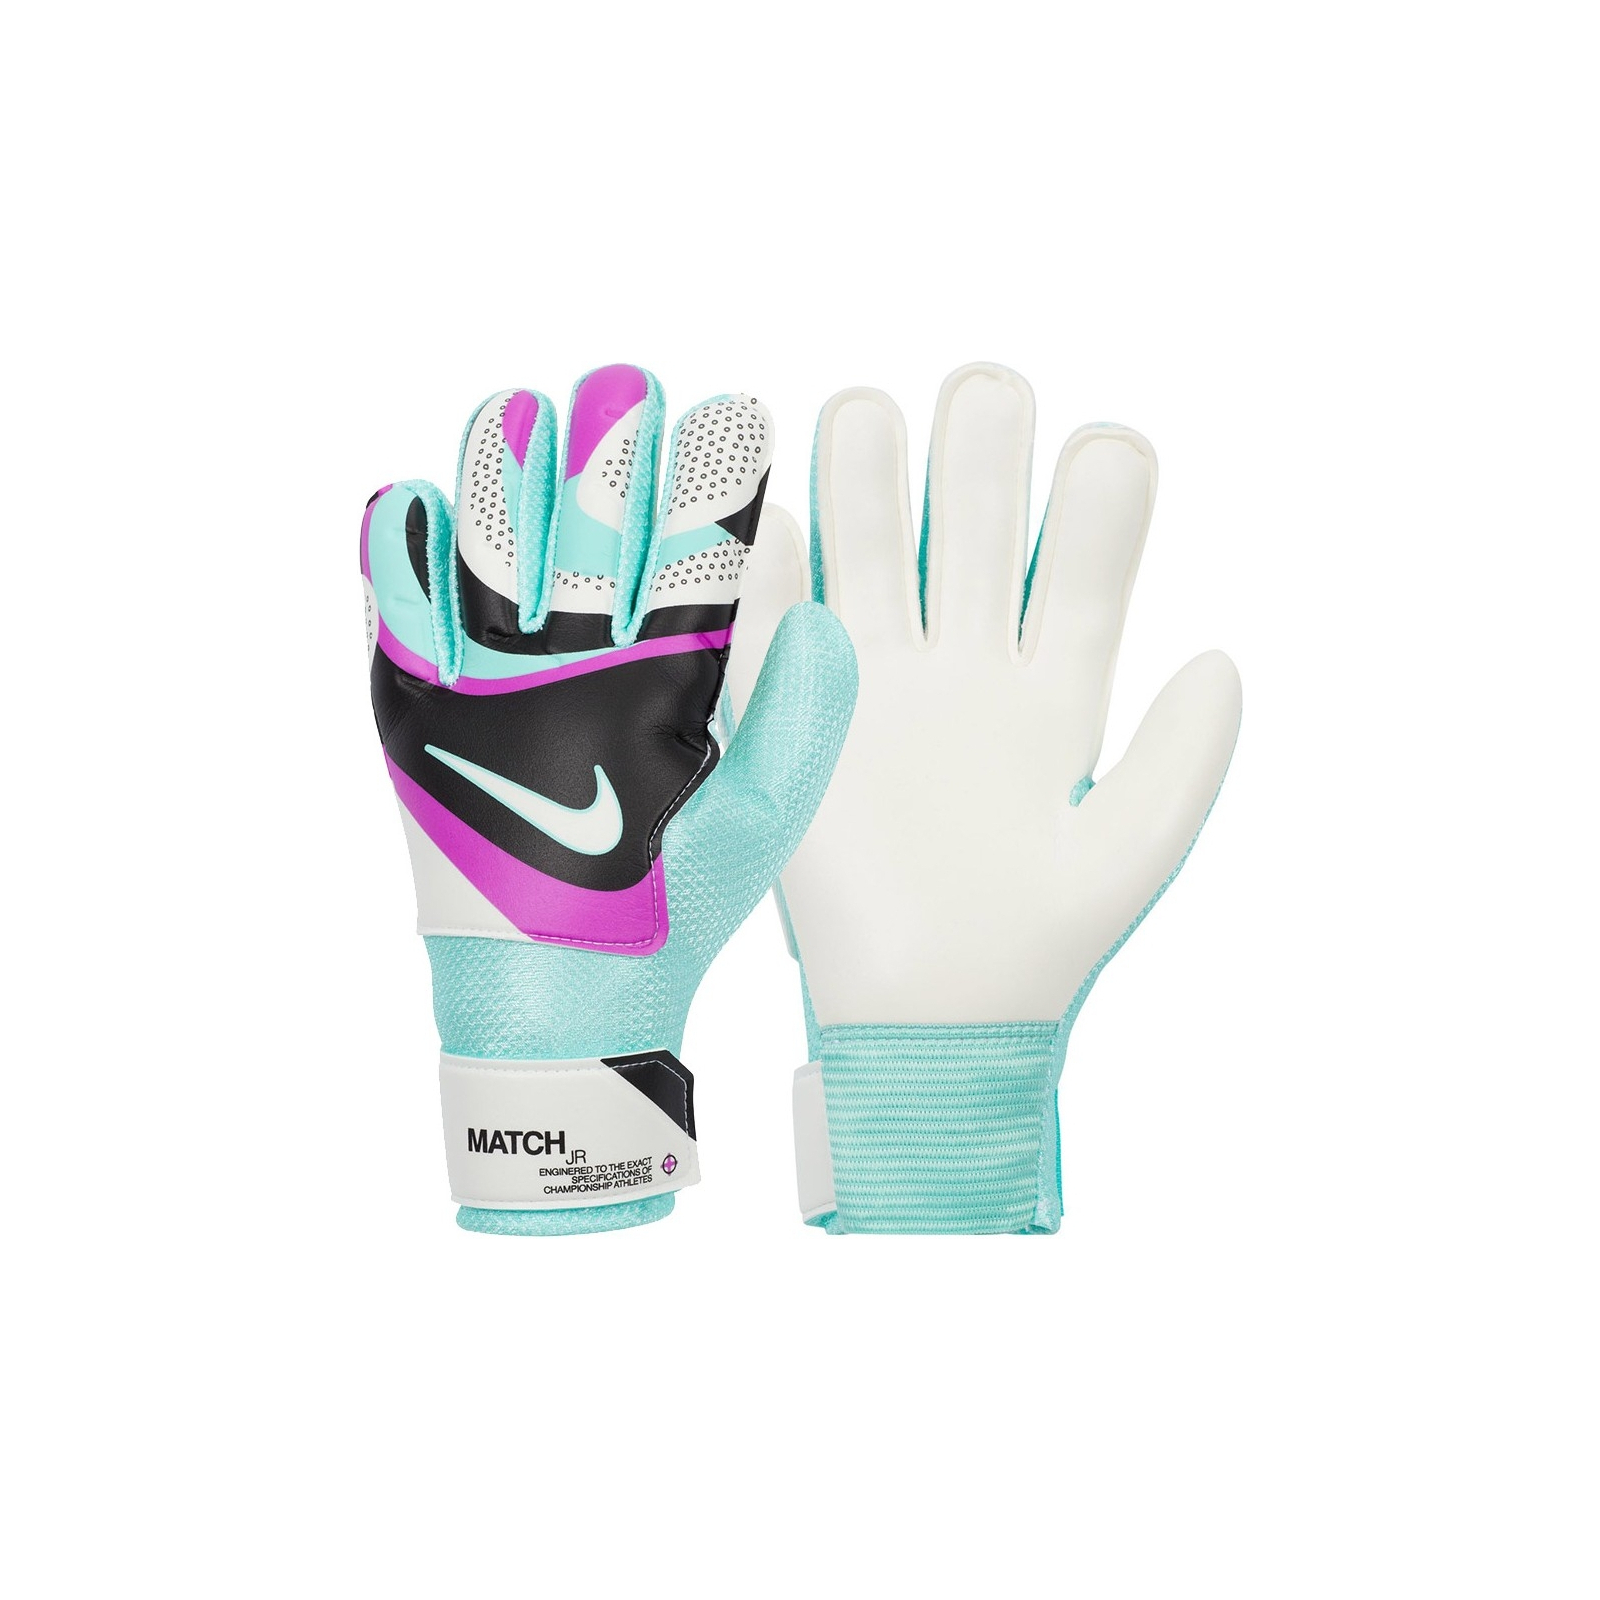 Вратарские перчатки Nike NK GK Match JR - HO23 FJ4864-010 білий, бірюзовий Діт 8 (196968940707)